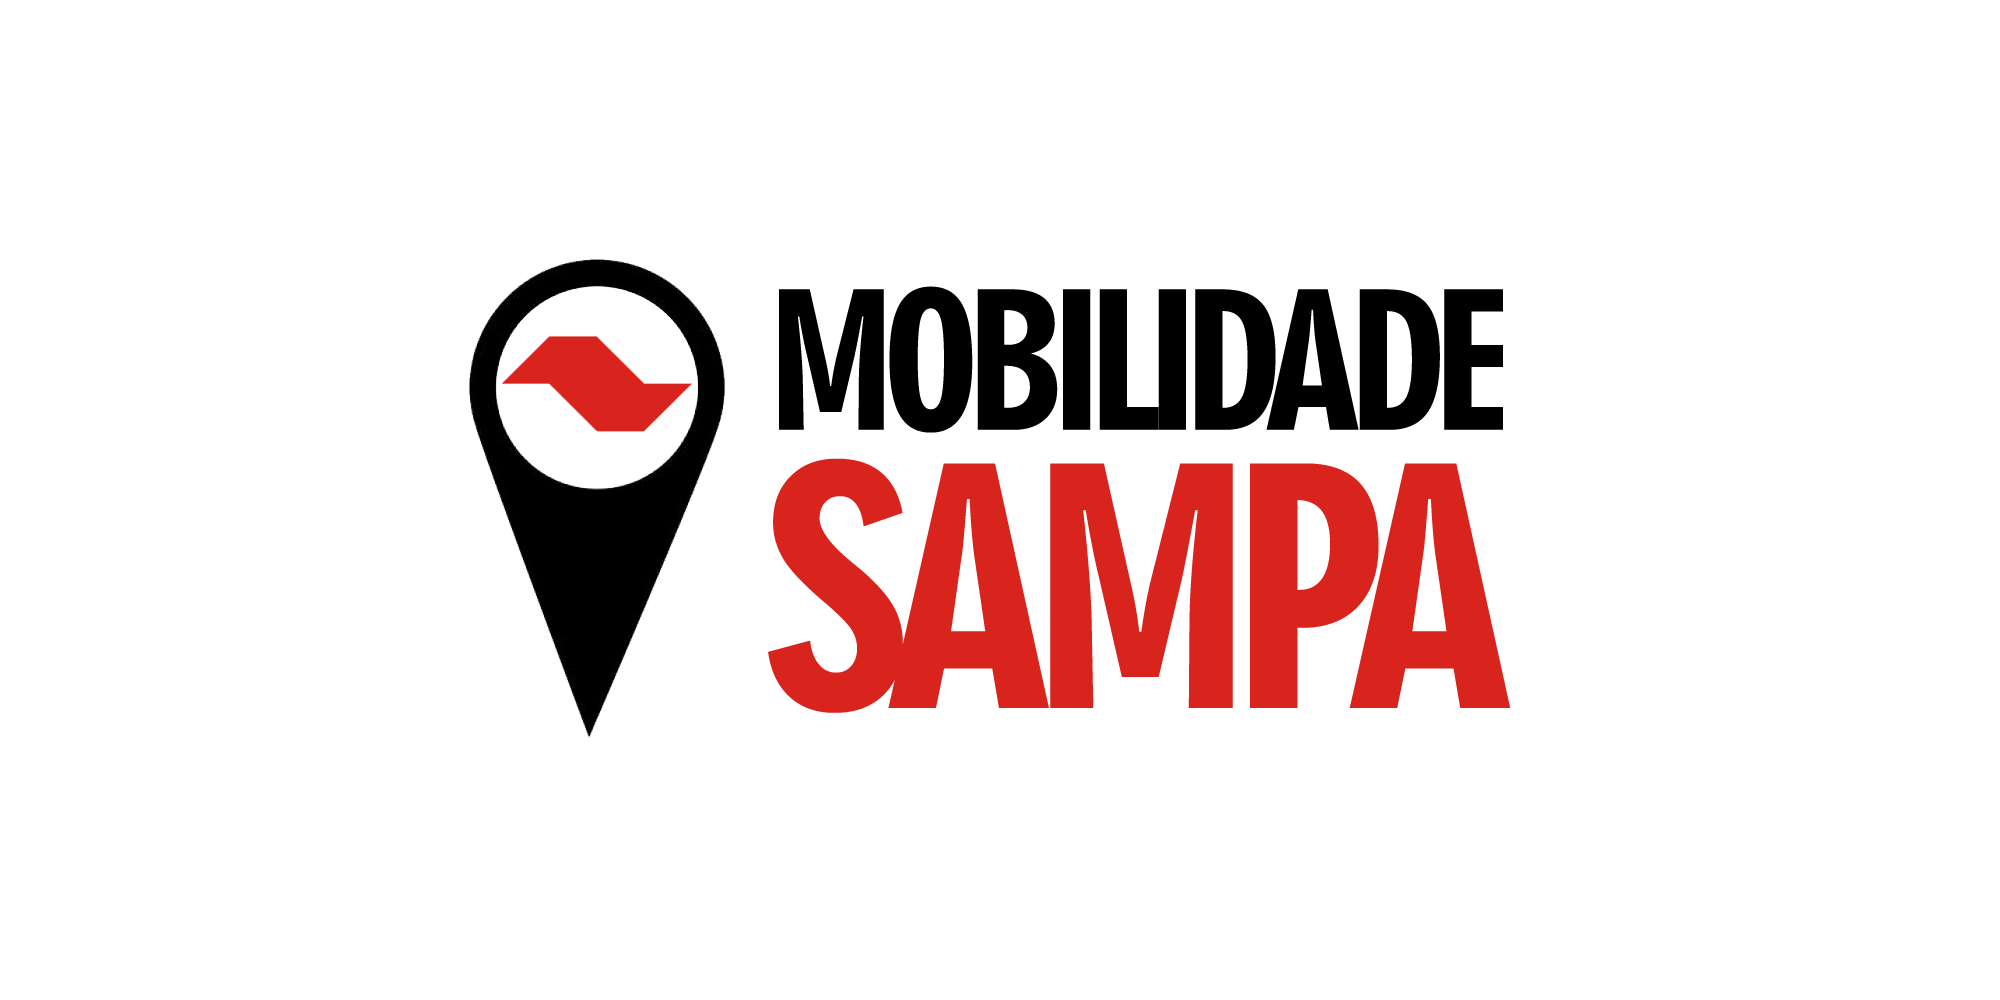 Mobilidade Sampa